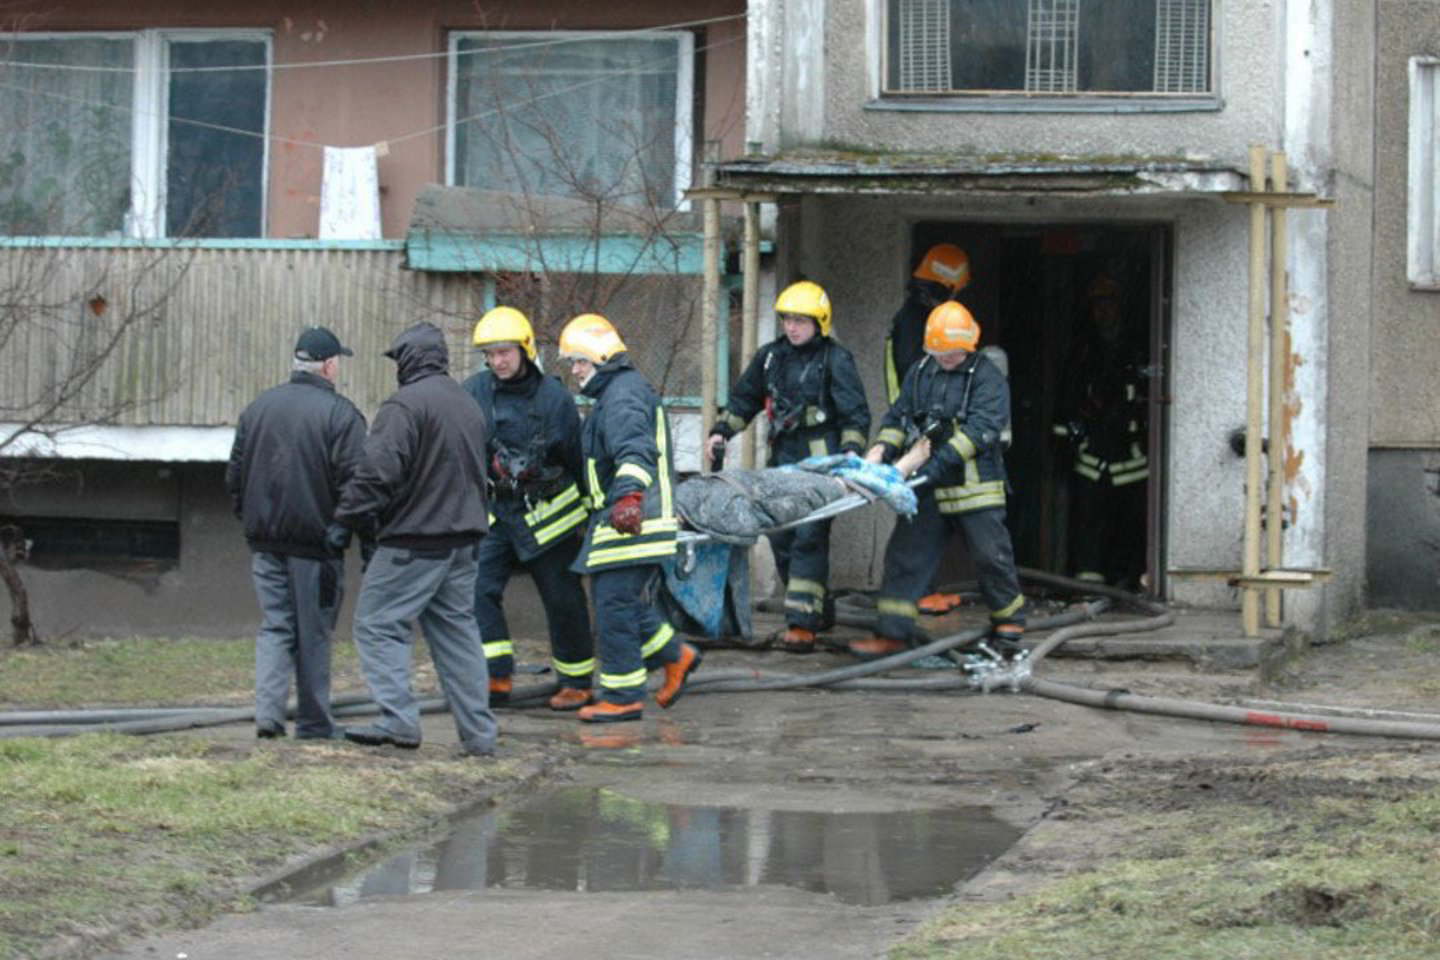  Vilniaus daugiabutyje gaisrą sukėlęs ir 6 žmones pražudęs vyras sulaukė griežtesnės bausmės.<br> A.Vaitkevičiaus nuotr.